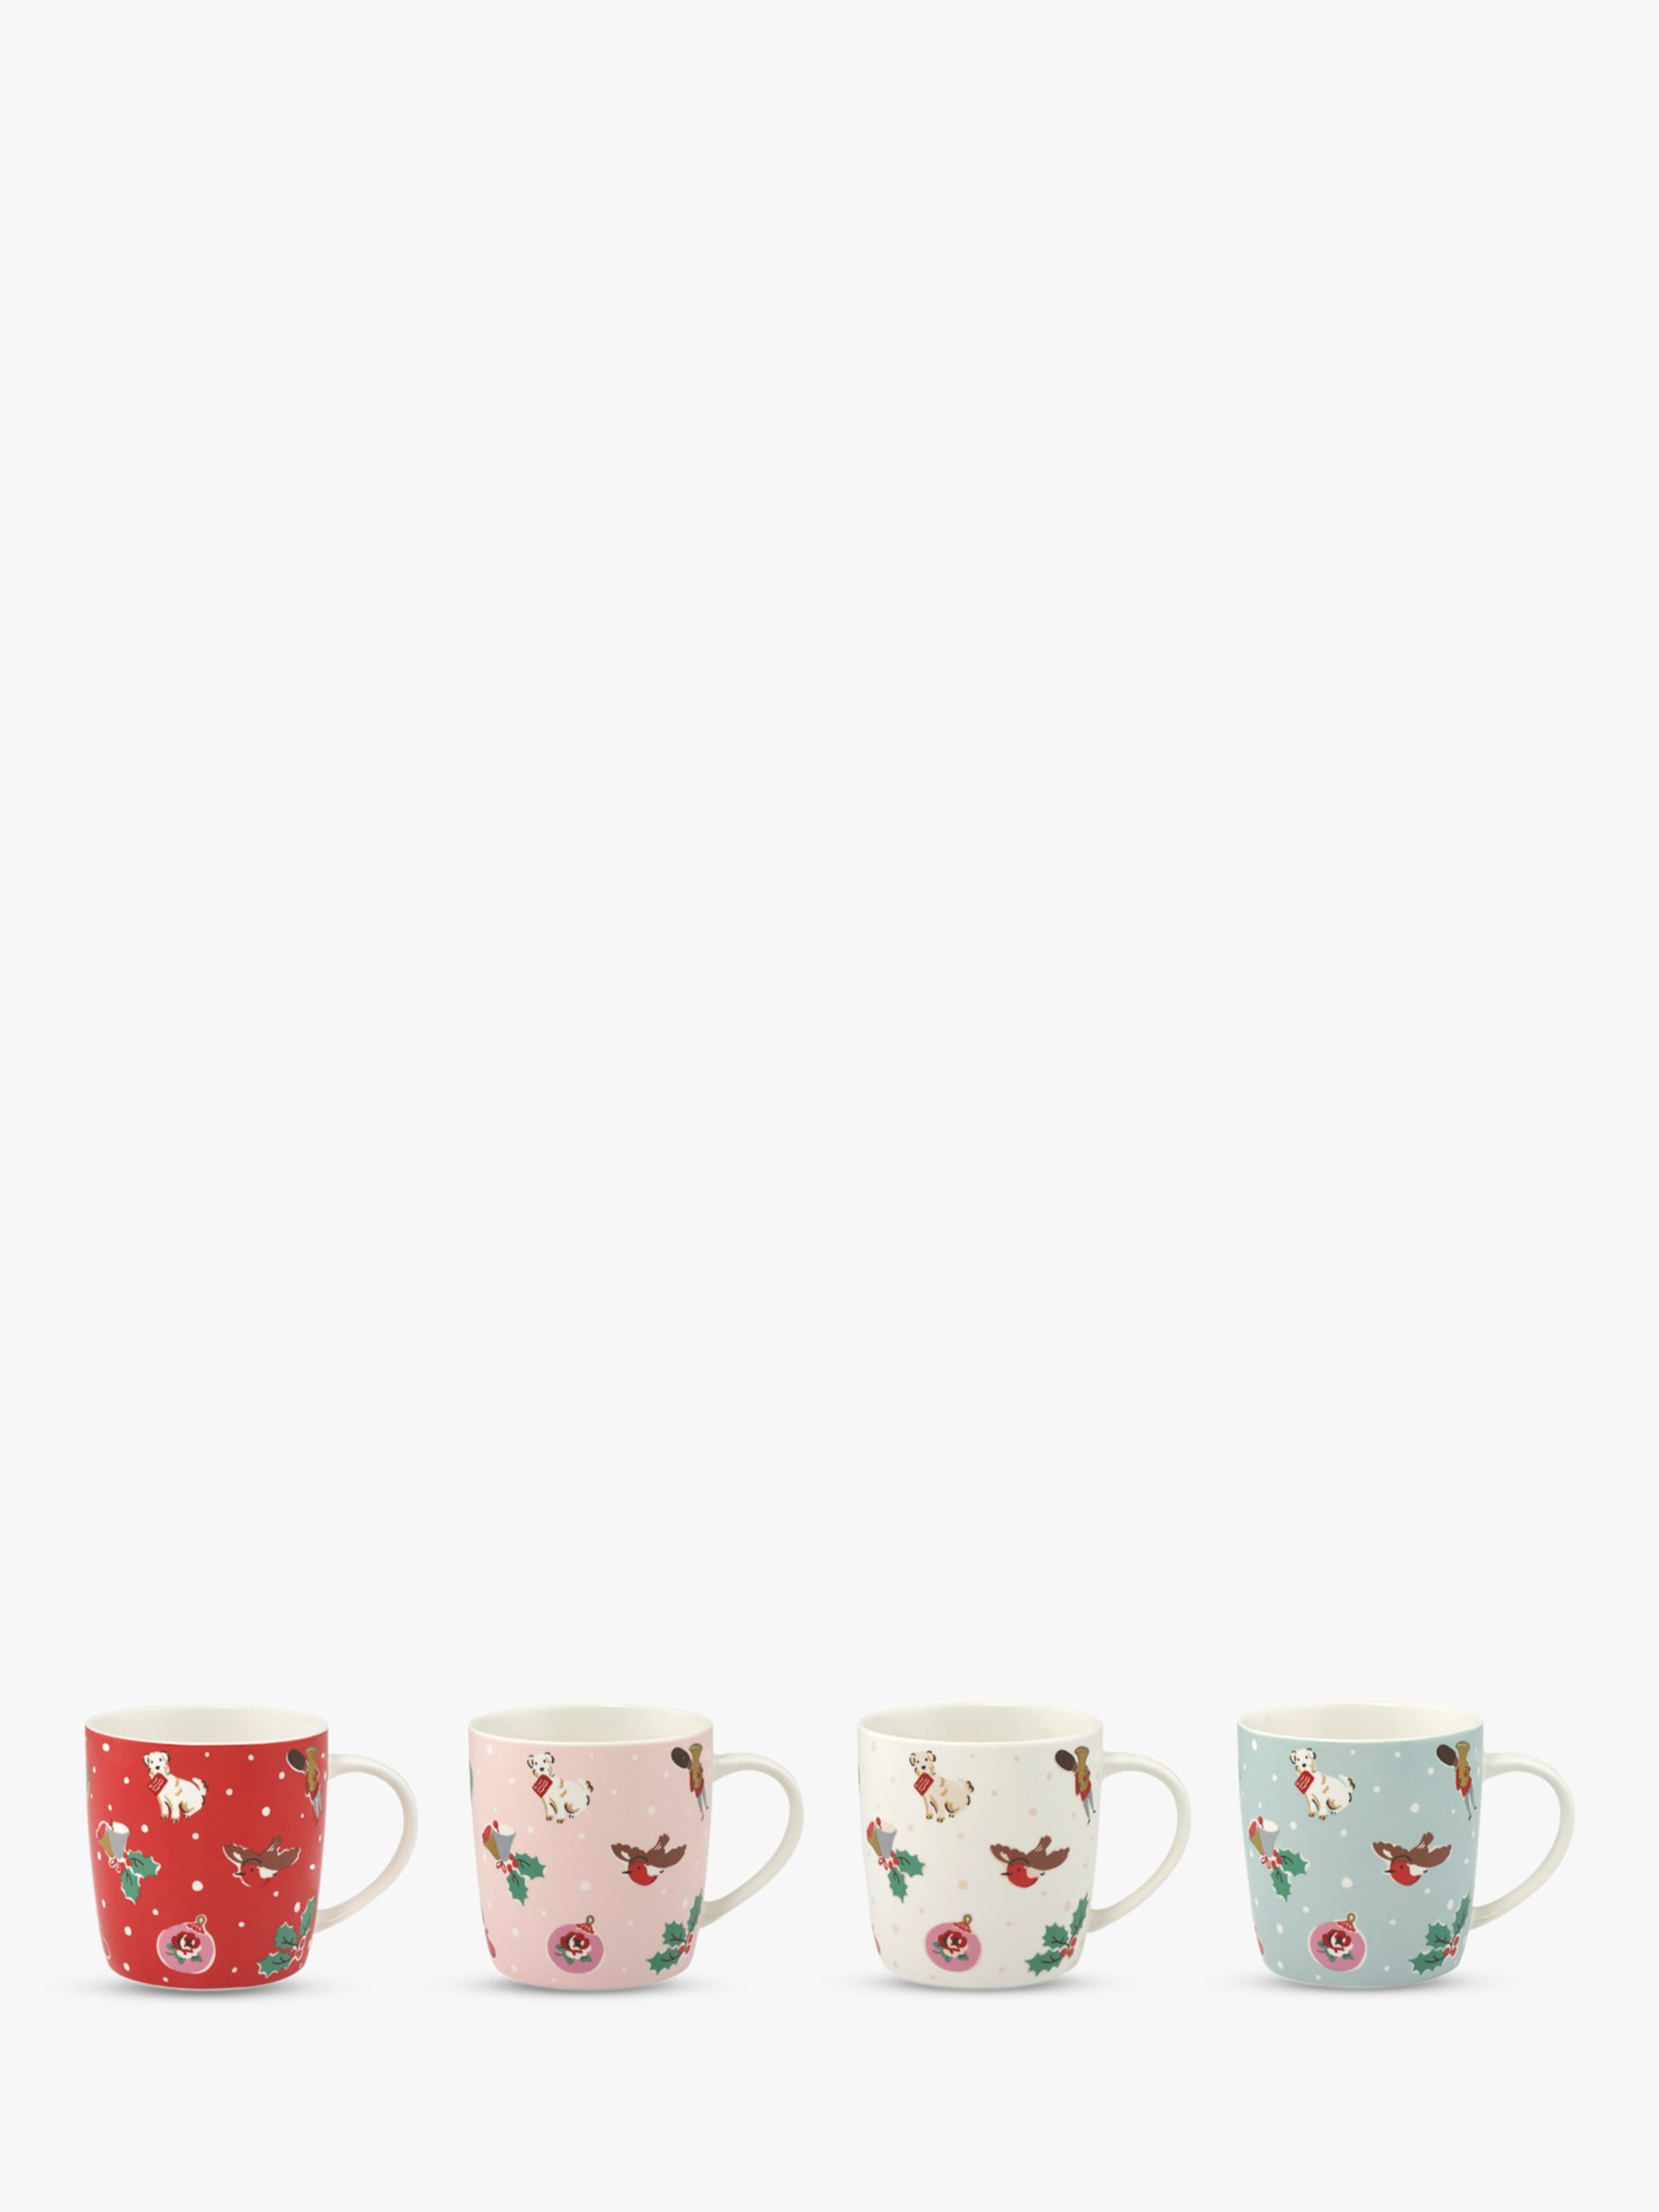 cath kidston mugs set of 4